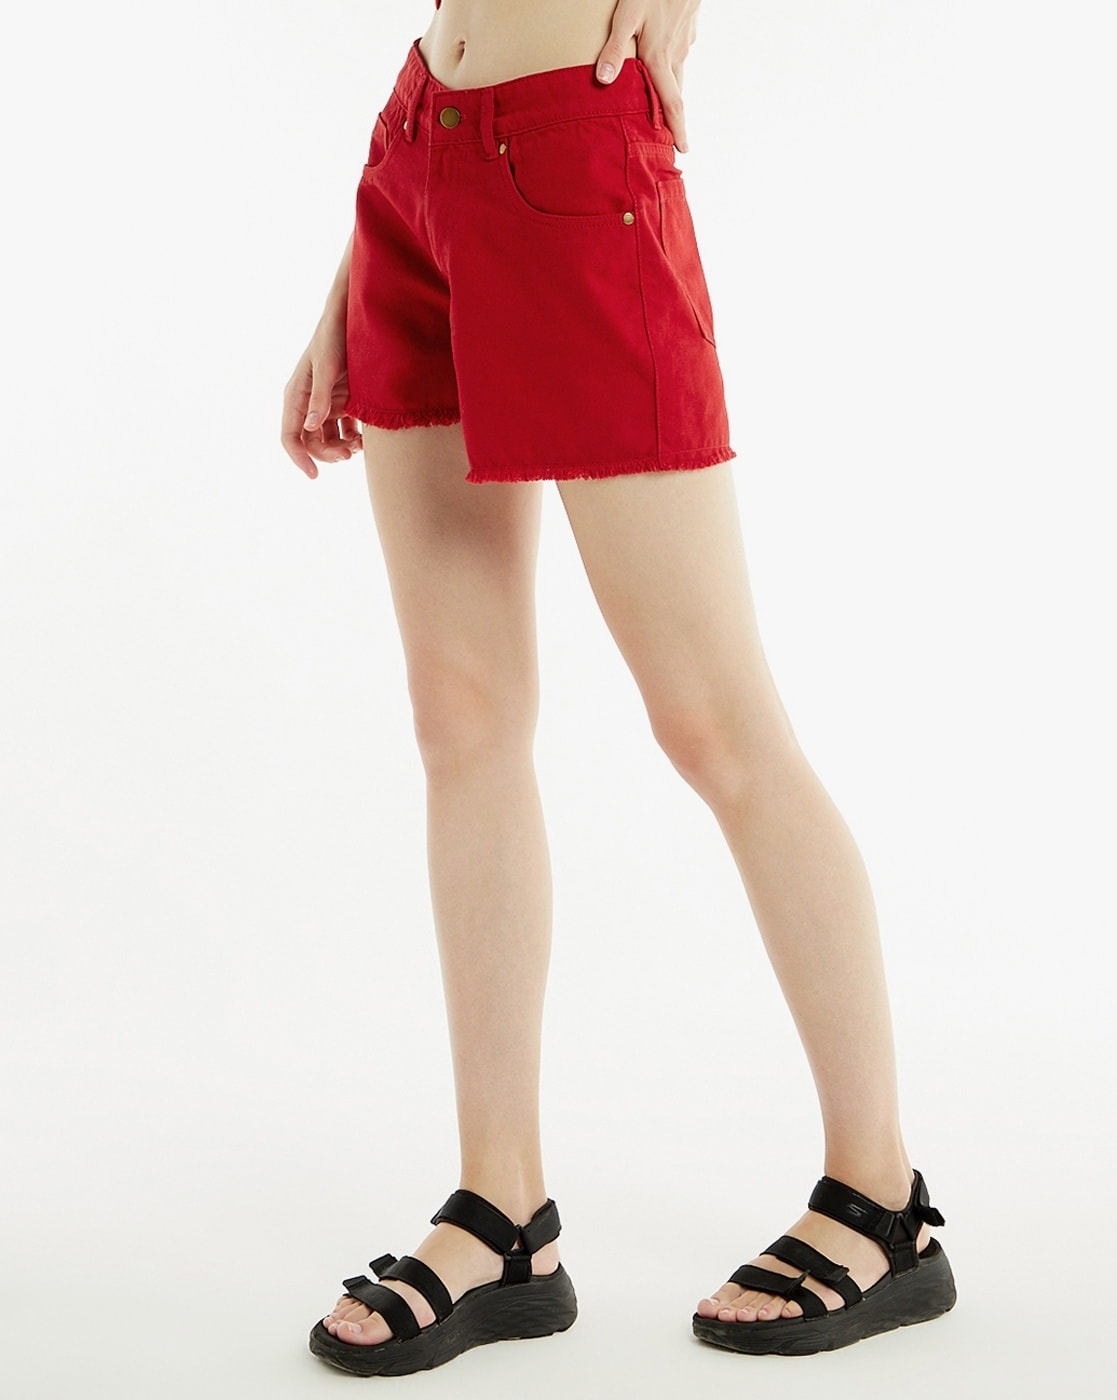 ASEIDFNSA Red Shorts for Women Womens Bodysuit Short Sleeve Denim